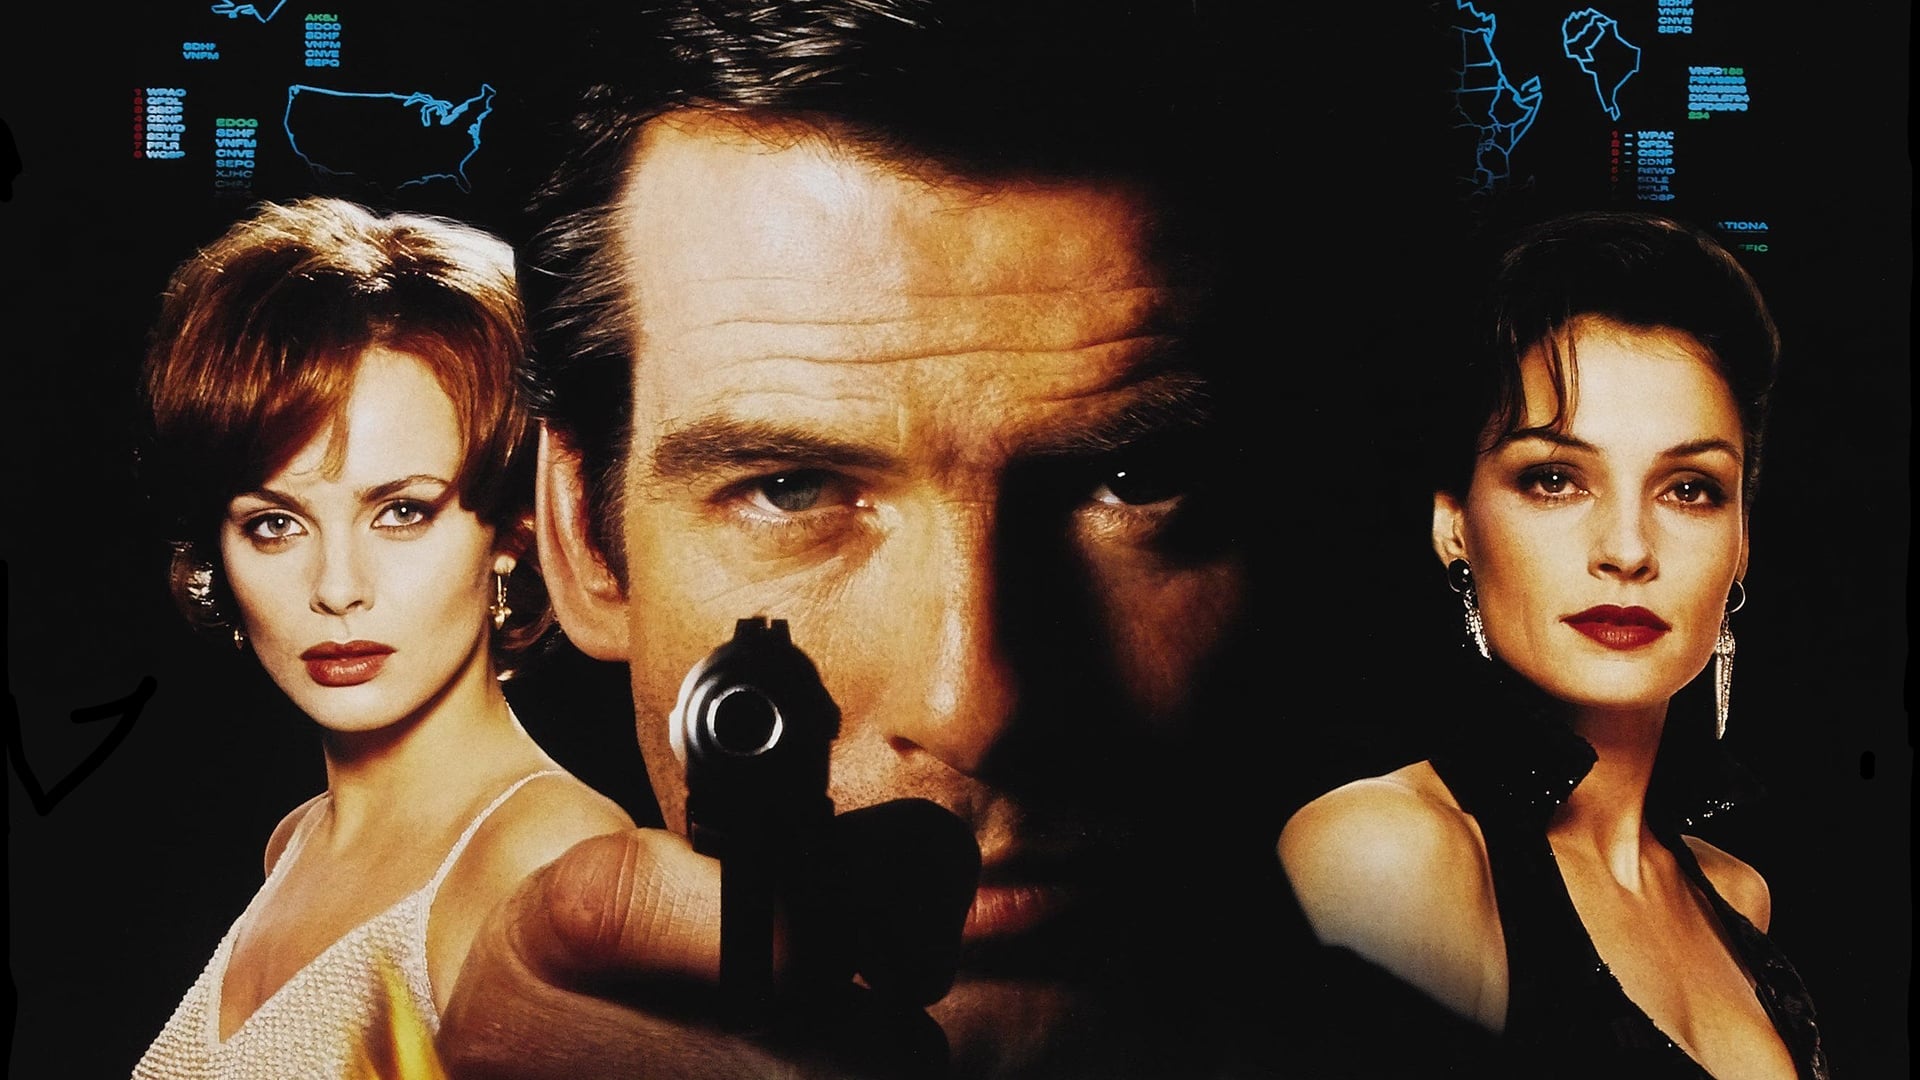 James Bond 007 - GoldenEye (1995)